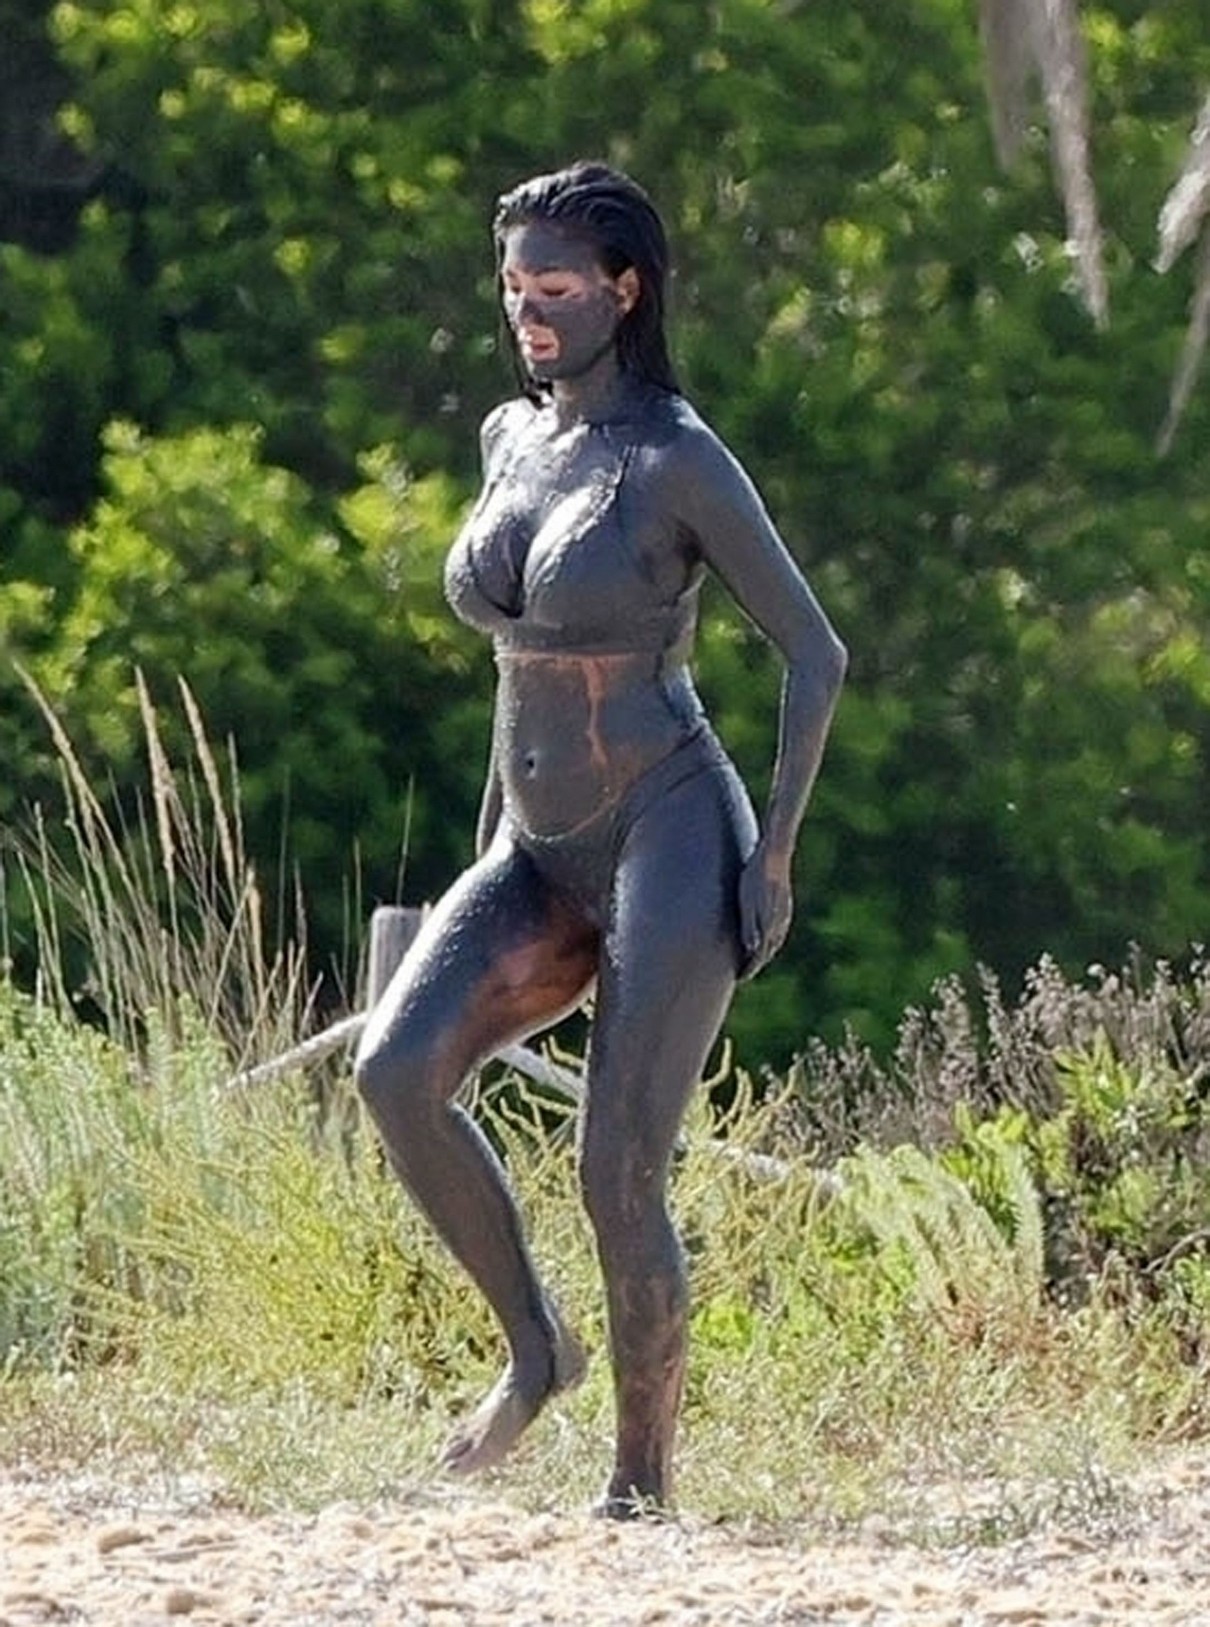 Nicole Scherzinger Sexy In Mud TheFappening.Pro 3 - Nicole Scherzinger Sexy In Ibiza (17 Photos)